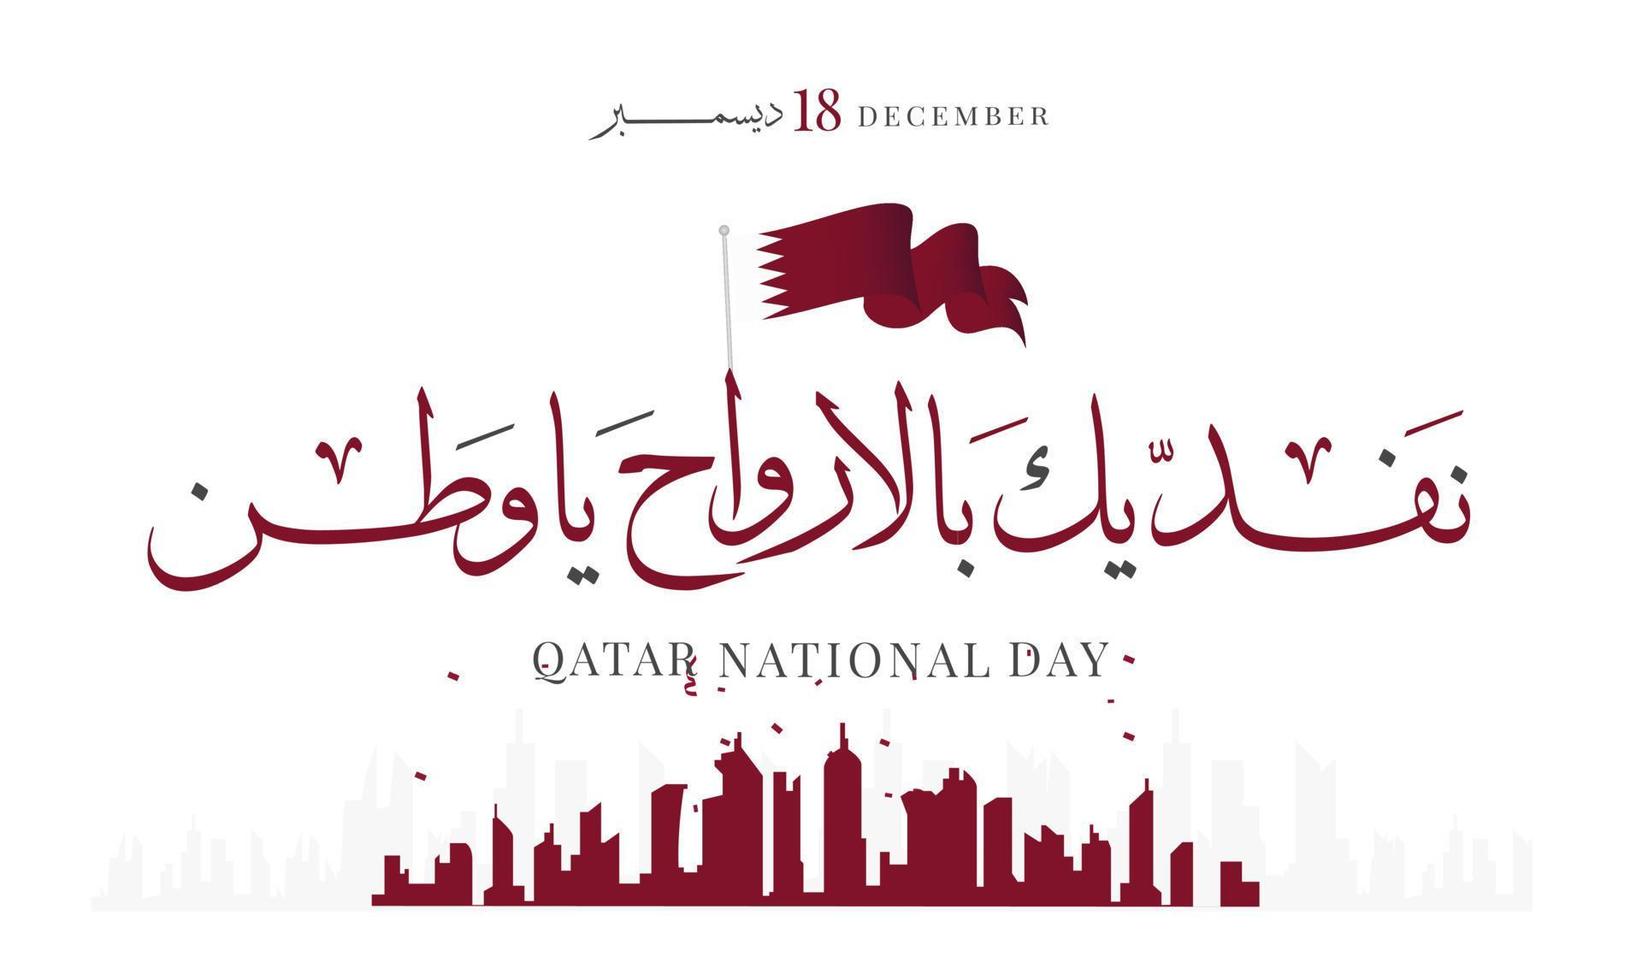 fête nationale du qatar, fête de l'indépendance du qatar, illustration vectorielle du 18 décembre vecteur